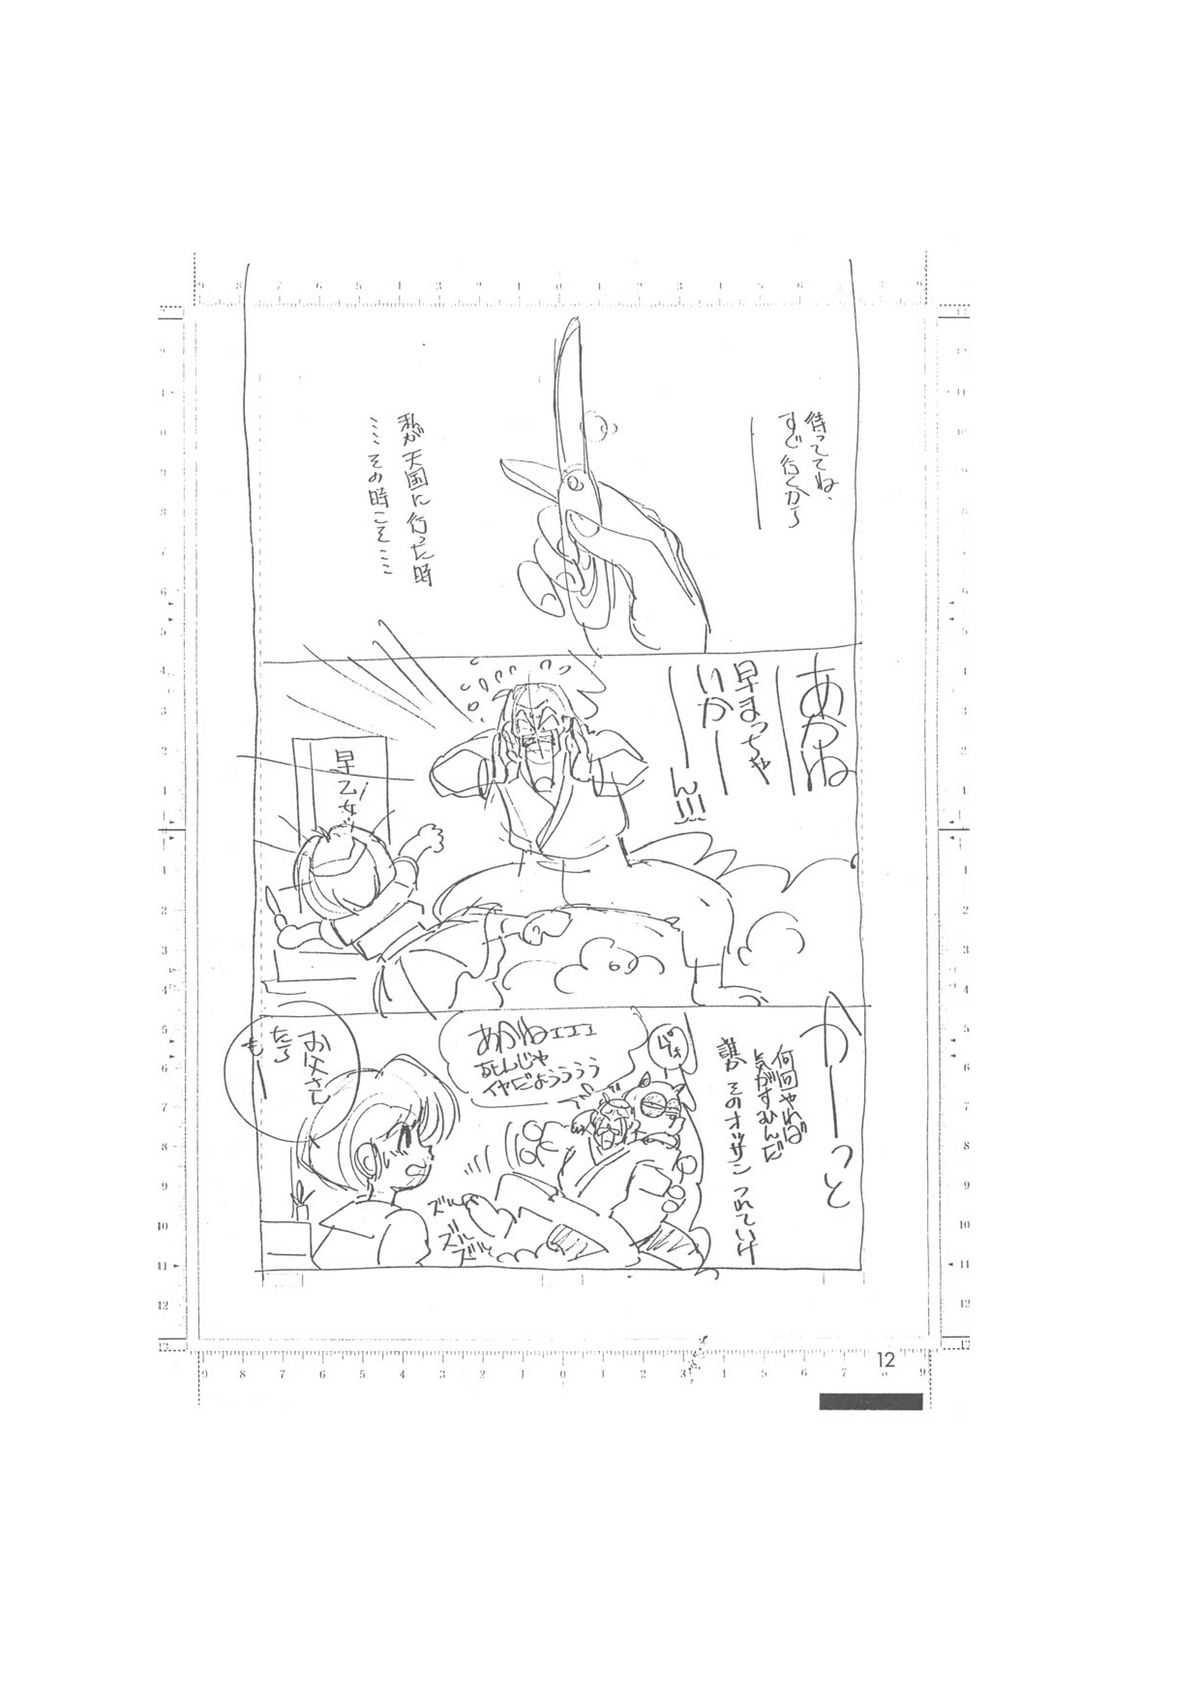 メイキング・オブ・『真・最悪的悲劇』 - A Ranma Doujin Sketch by Dark Zone 